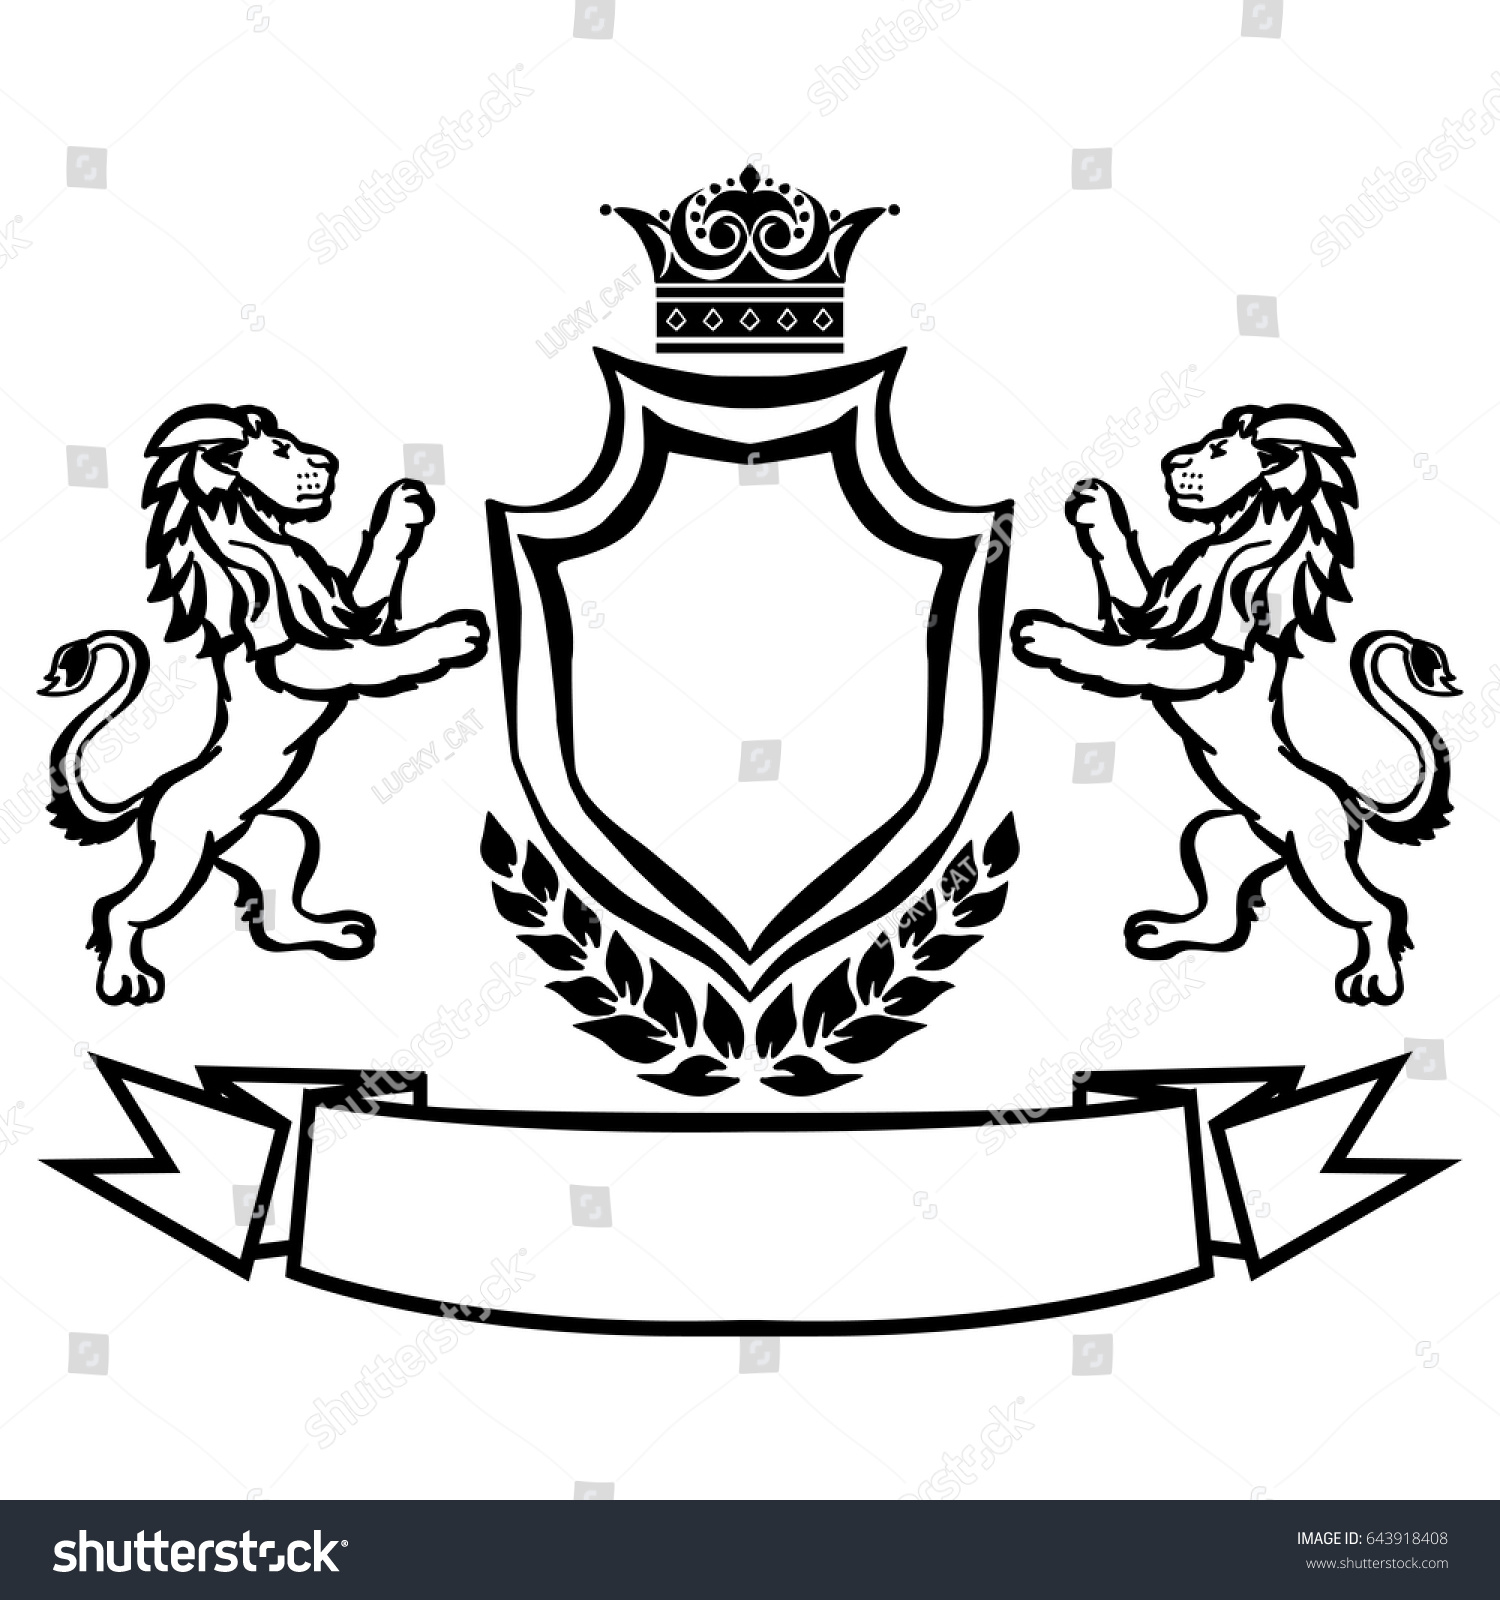 Герб семьи со львом